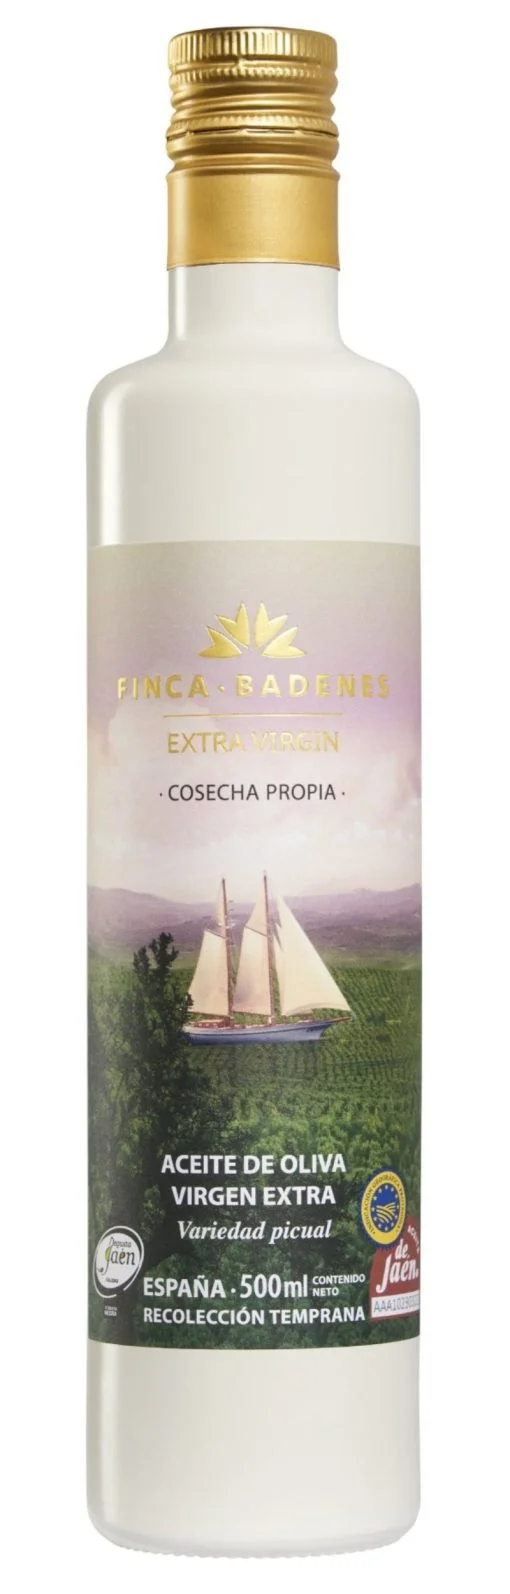 Aceite de Oliva Virgen Extra Finca Badenes Aires de Jaen 500 ml x 4 un st 02 1675176310